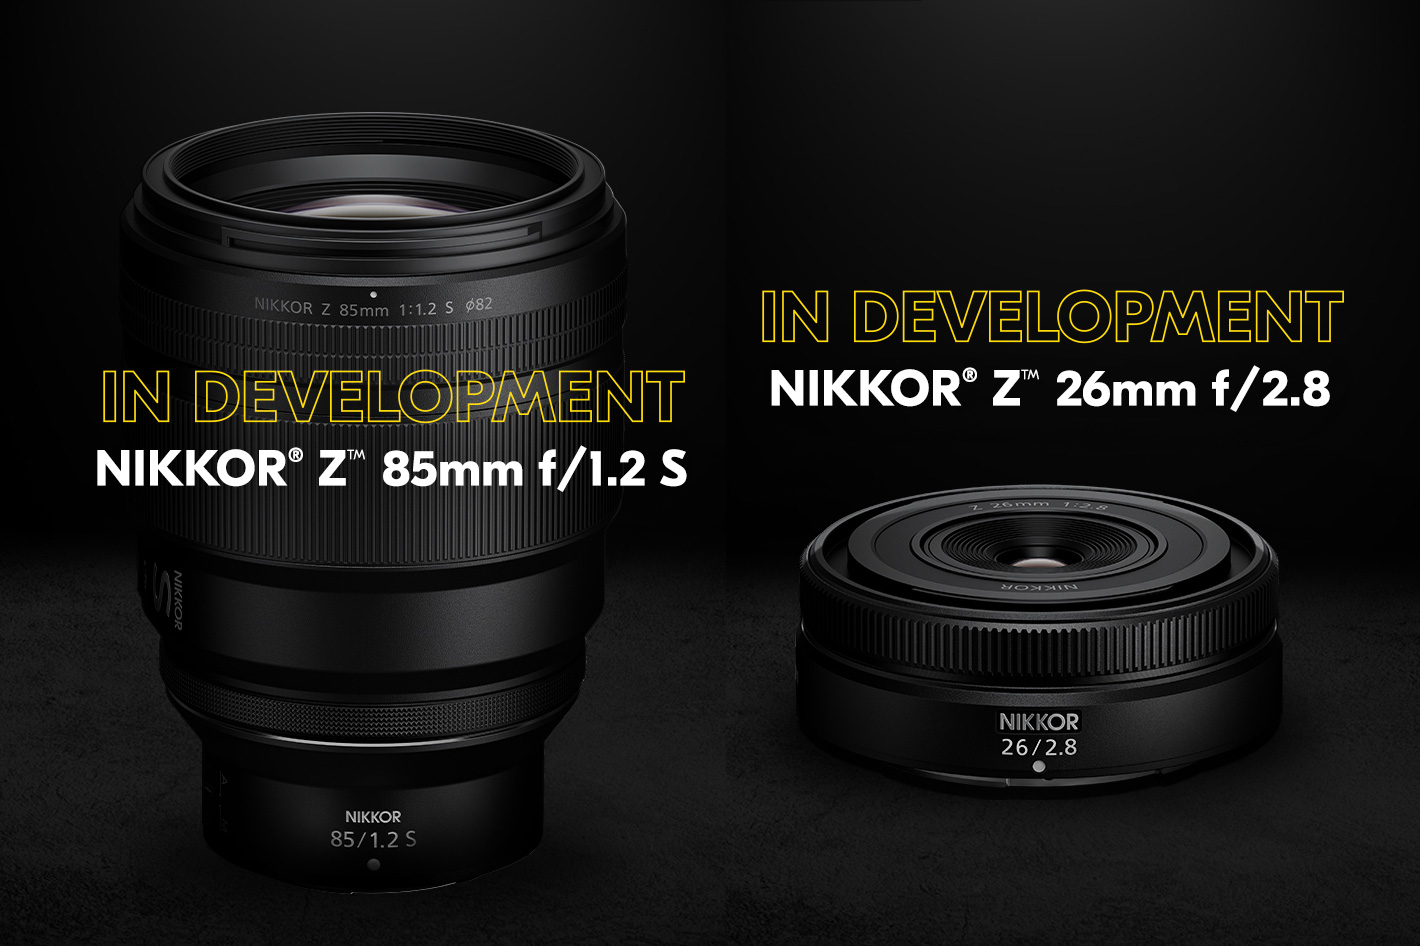 Nikon show pancake lens and portrait prime at CES 2023